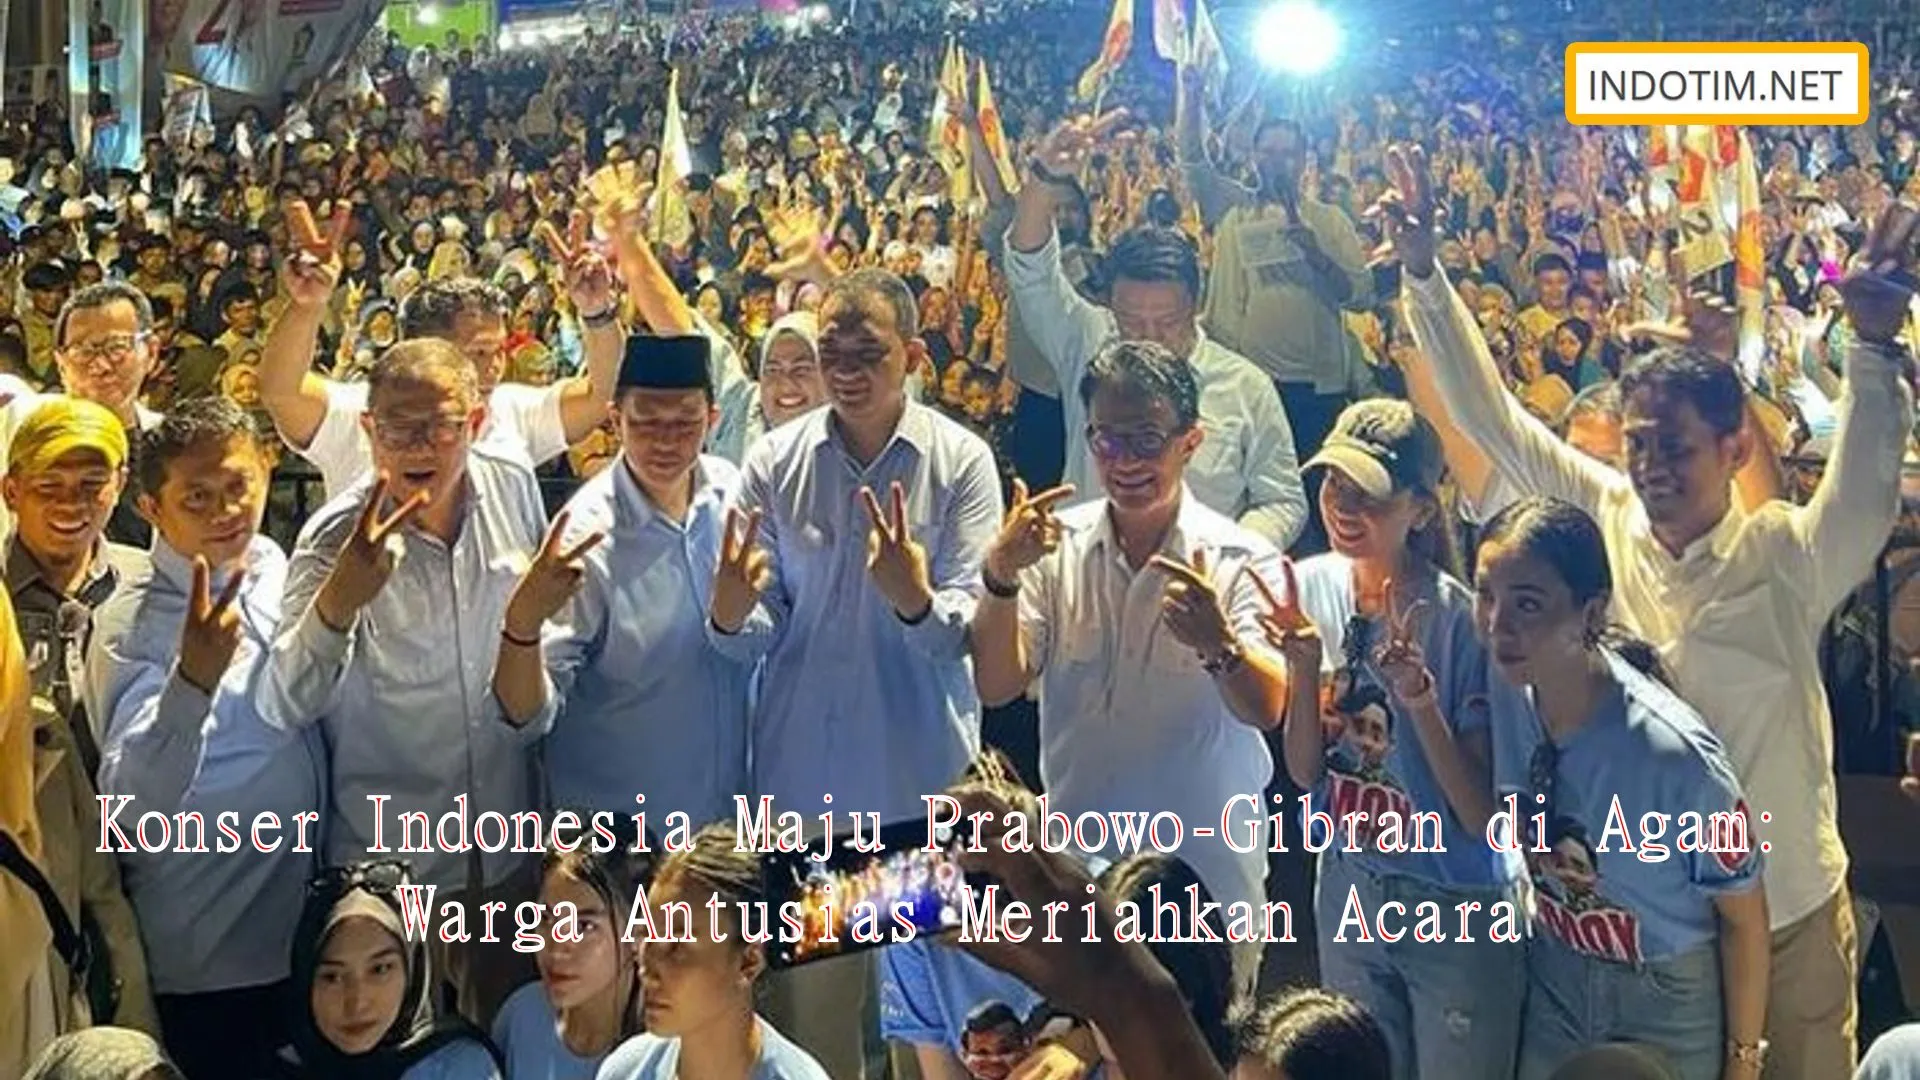 Konser Indonesia Maju Prabowo-Gibran di Agam: Warga Antusias Meriahkan Acara